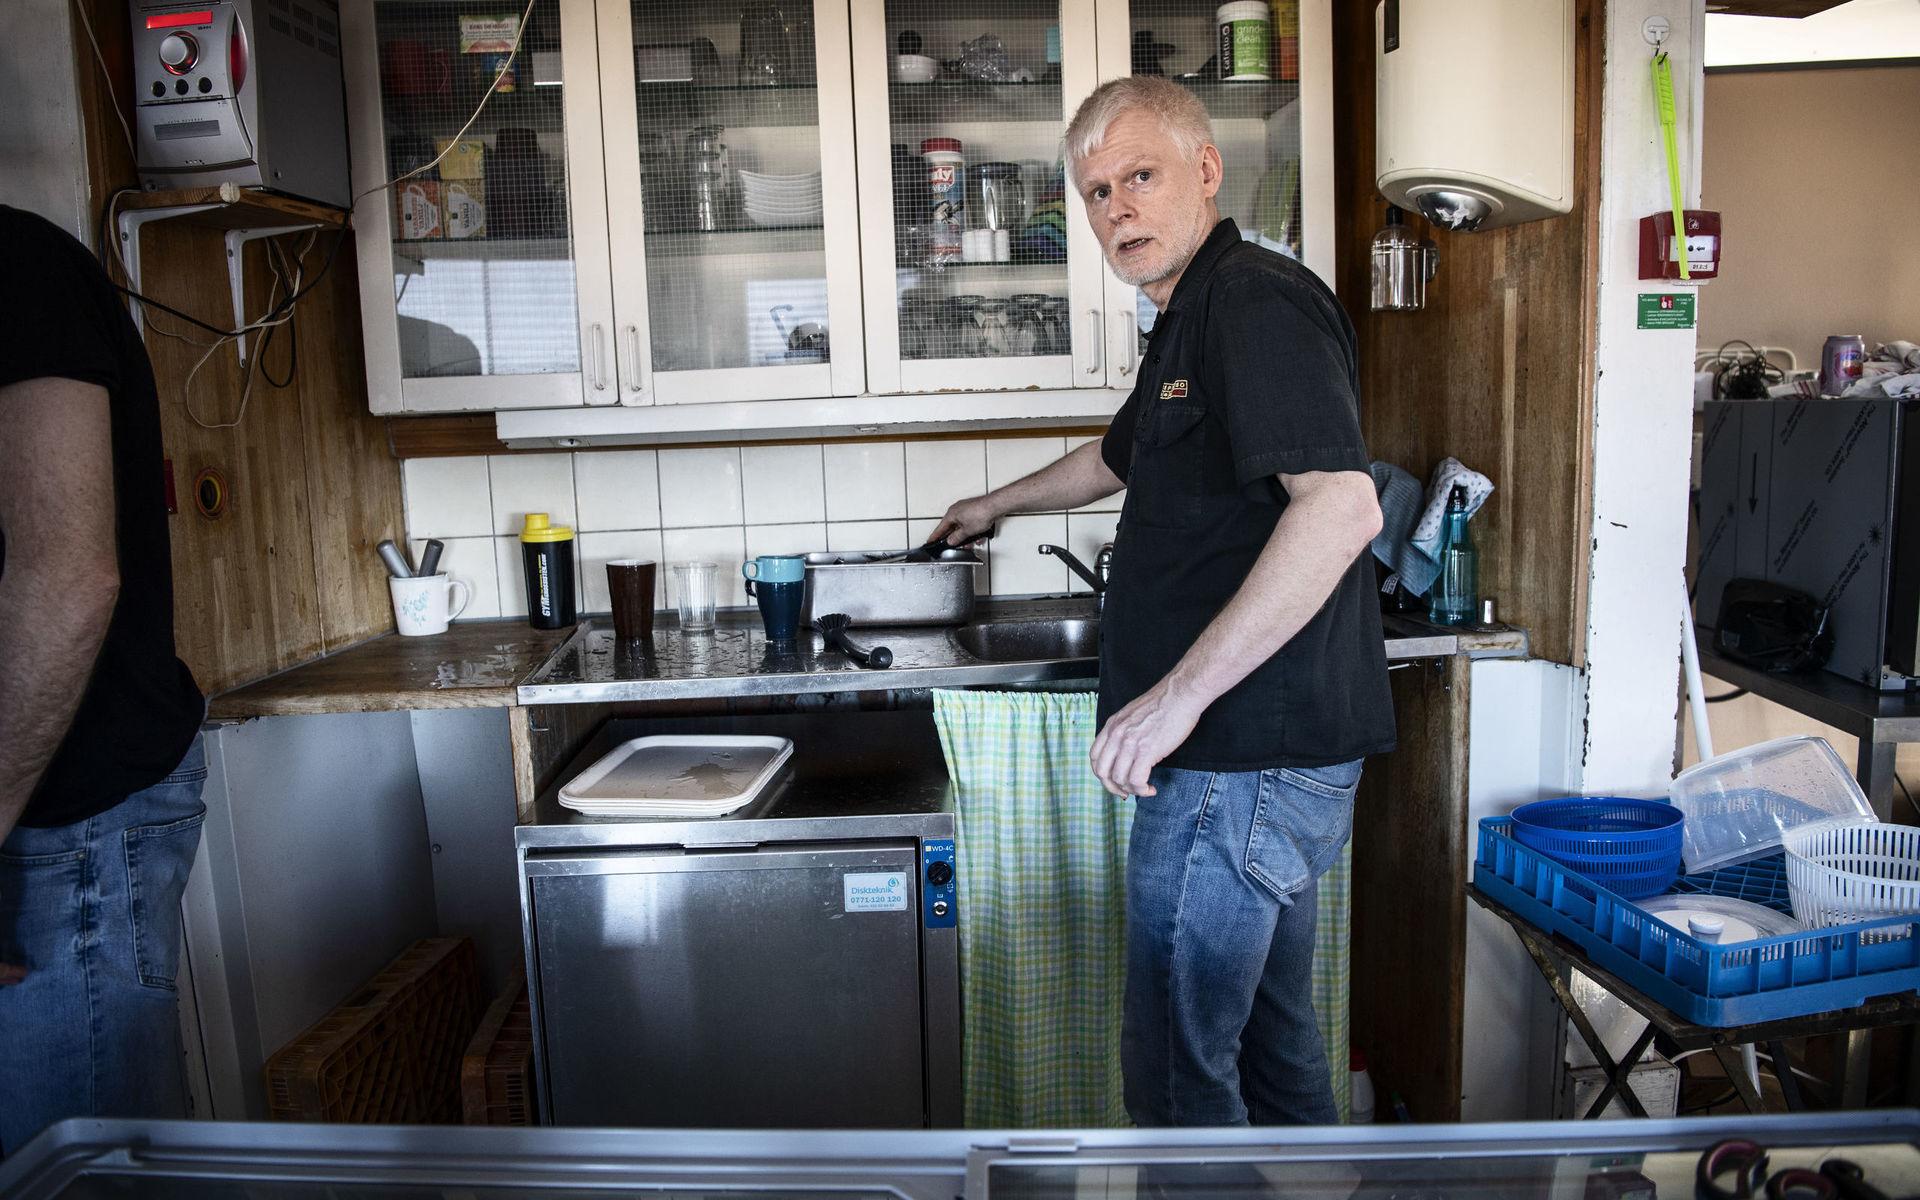 Göran Johansson som driver kaféet är uppgiven efter beskedet från tjänstemännen på kretslopp och vatten i förra veckan.